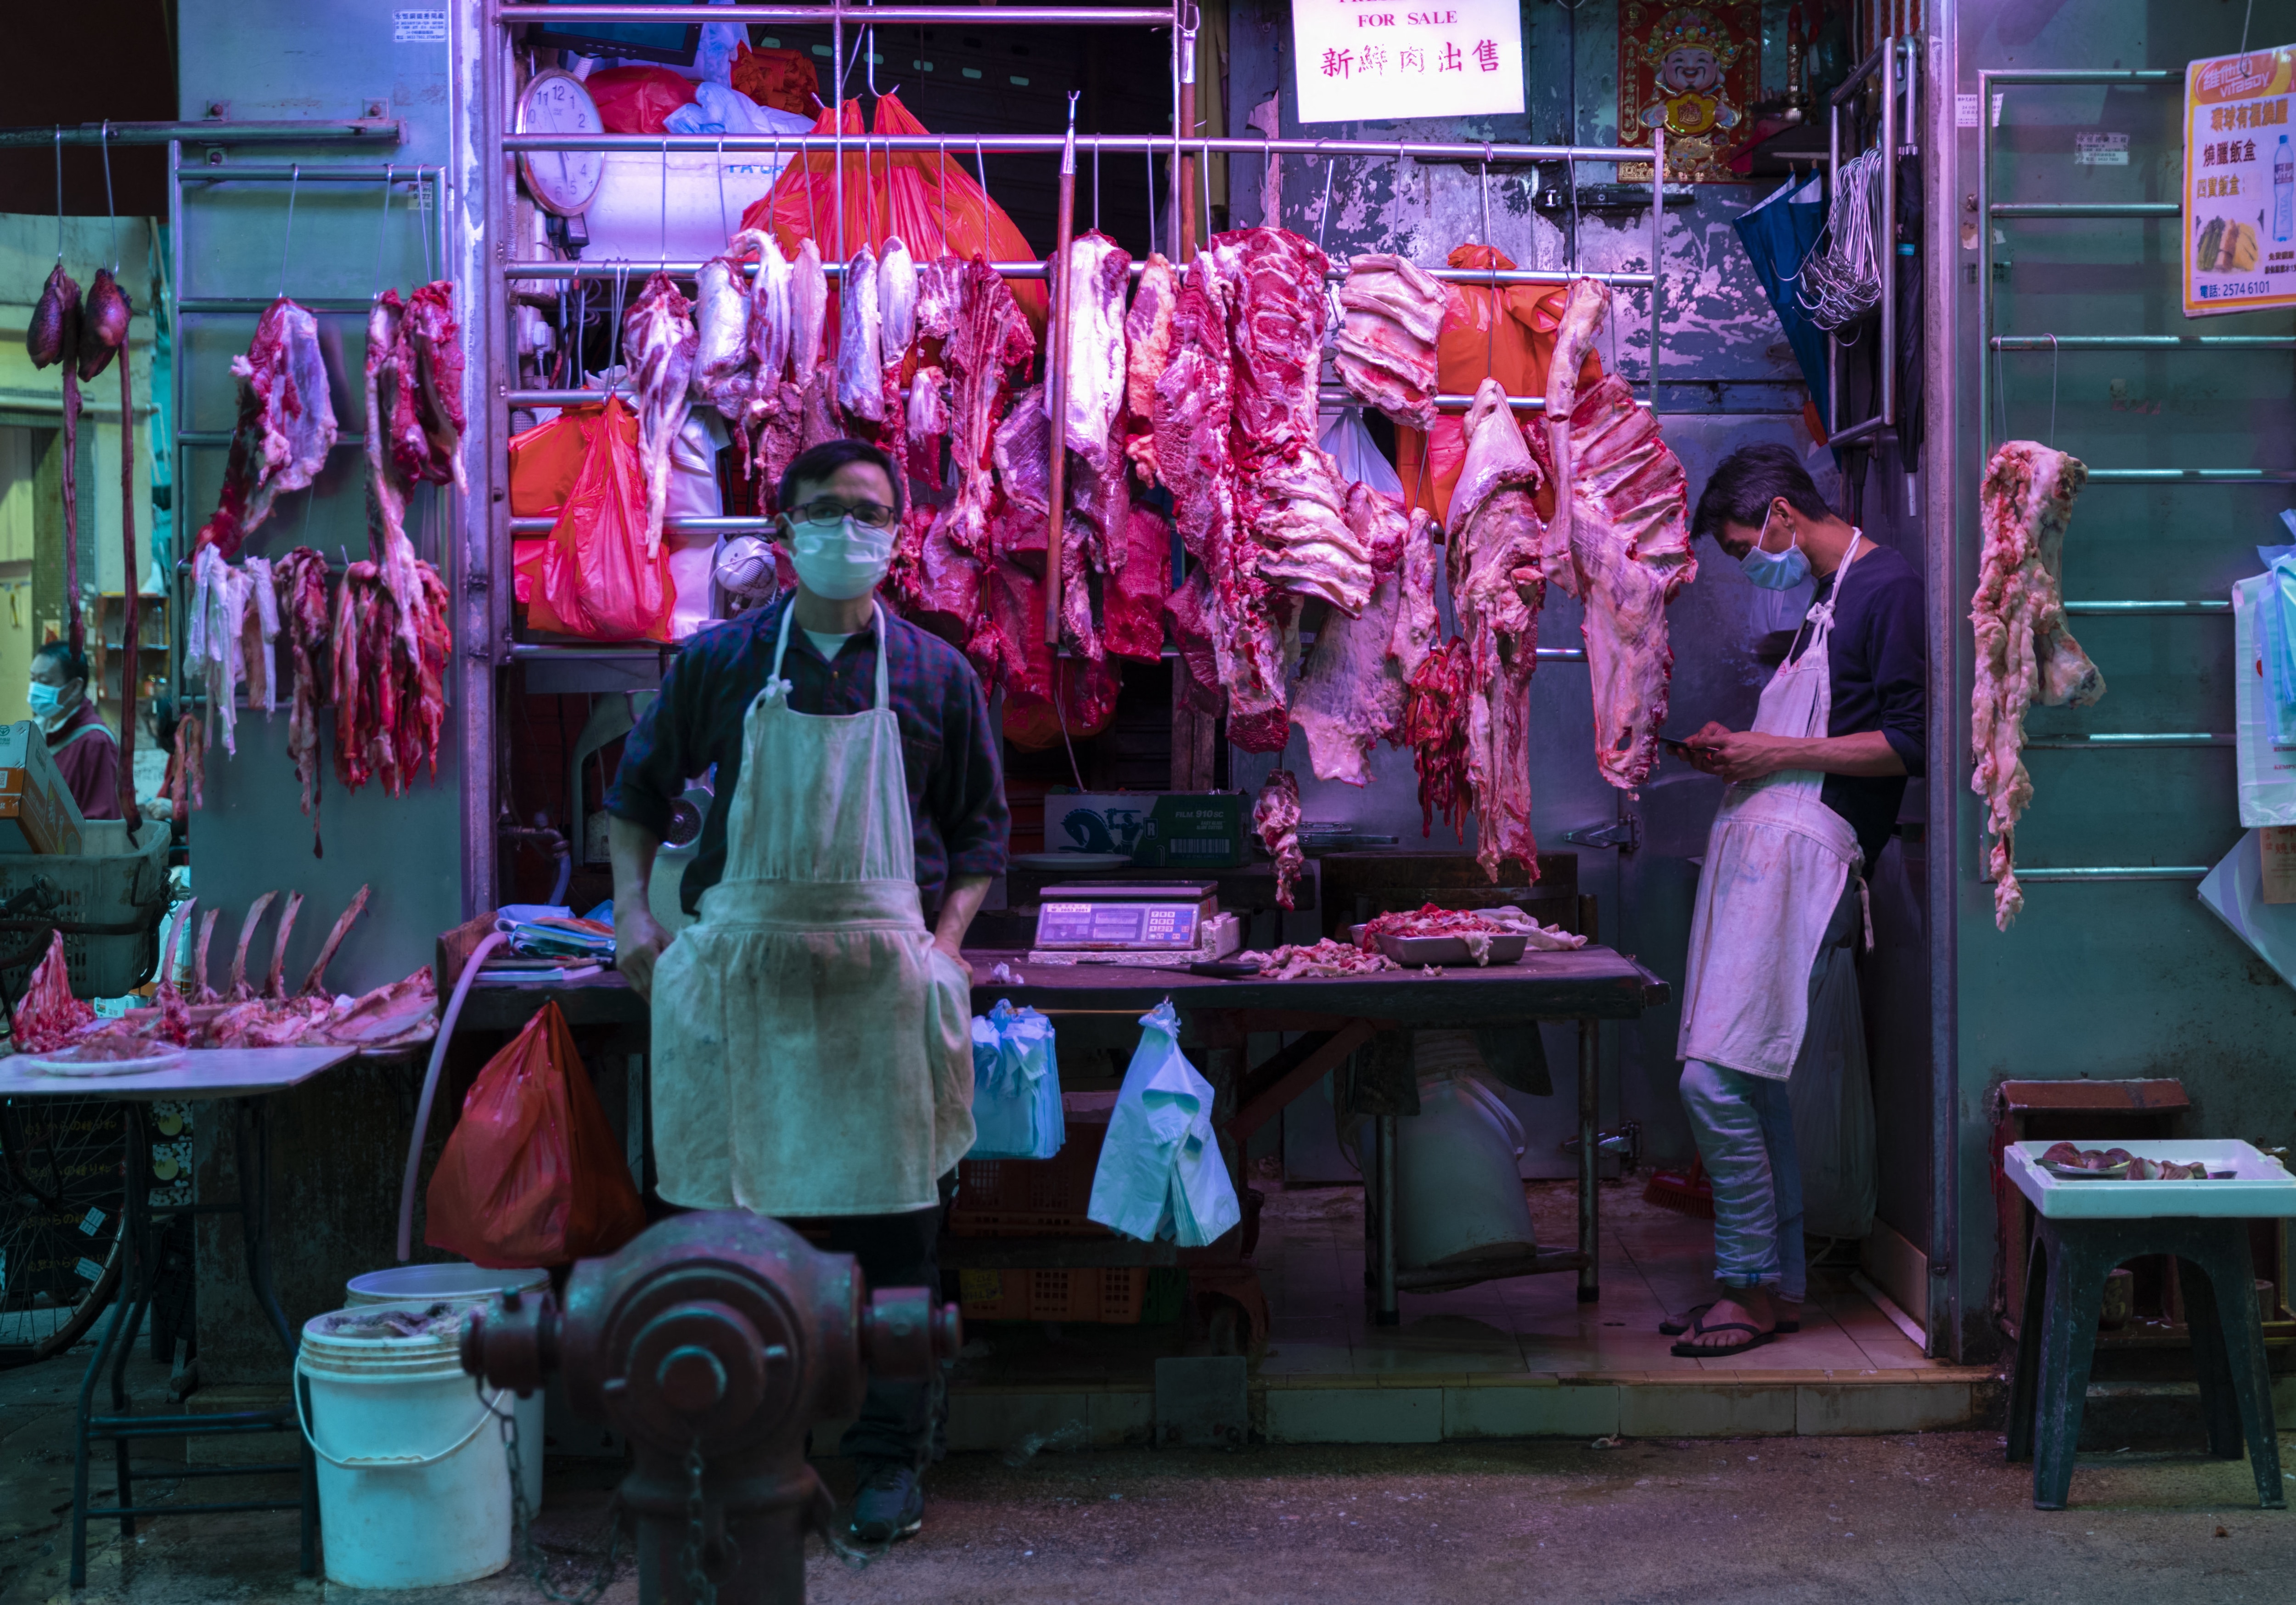 People wearing protective masks seen at the wet market. Hong Kong, China